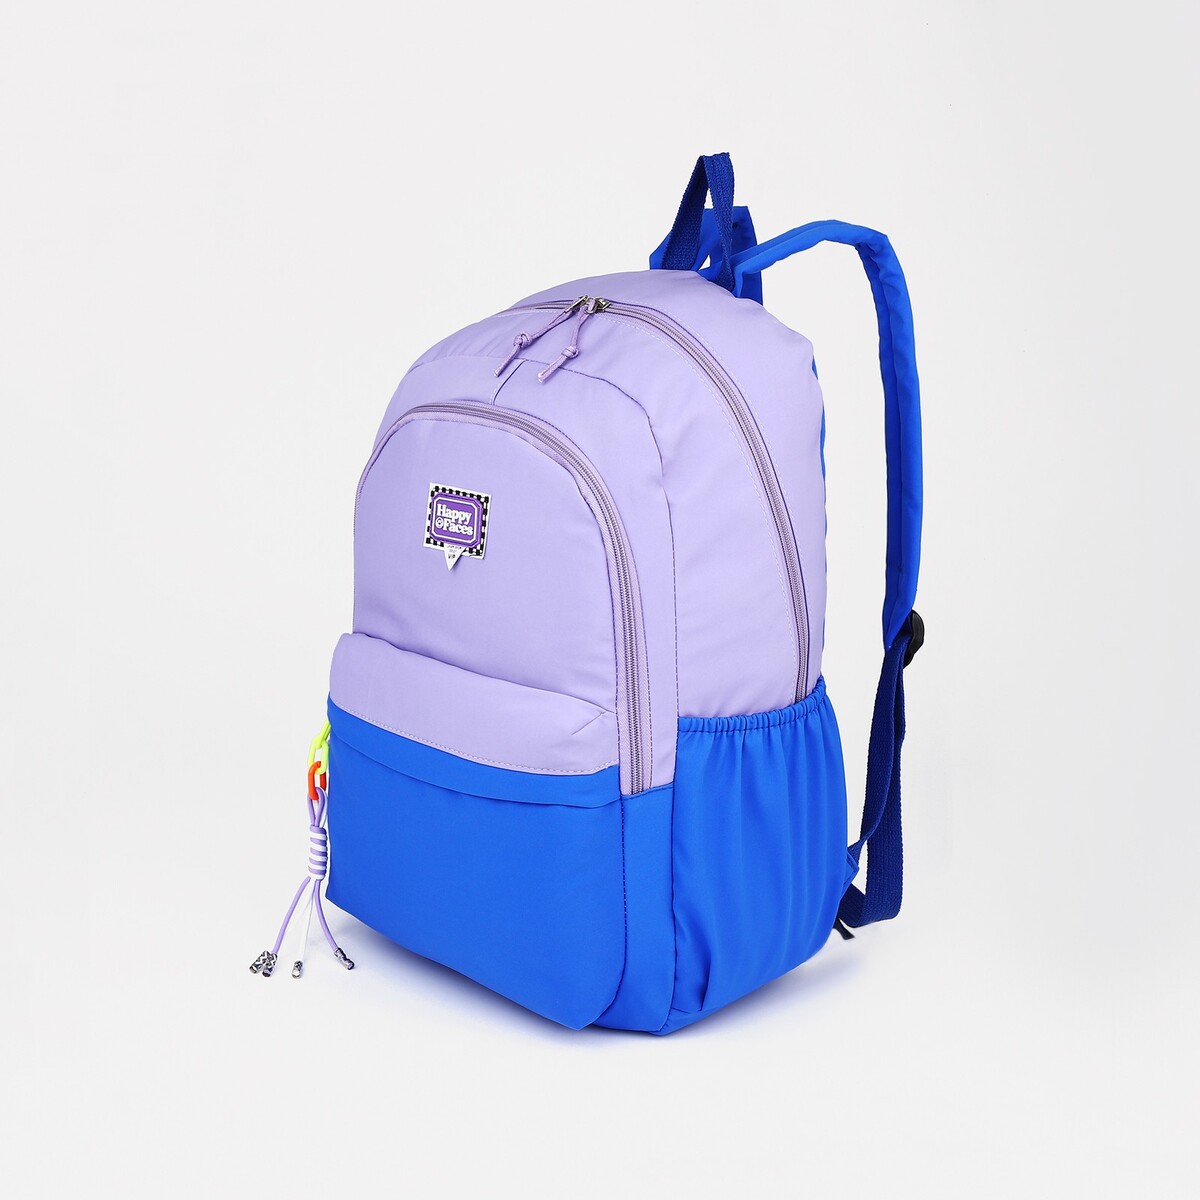 Рюкзак на молнии, 4 наружных кармана, цвет сиреневый/синий рюкзак на молнии 2 наружных кармана синий